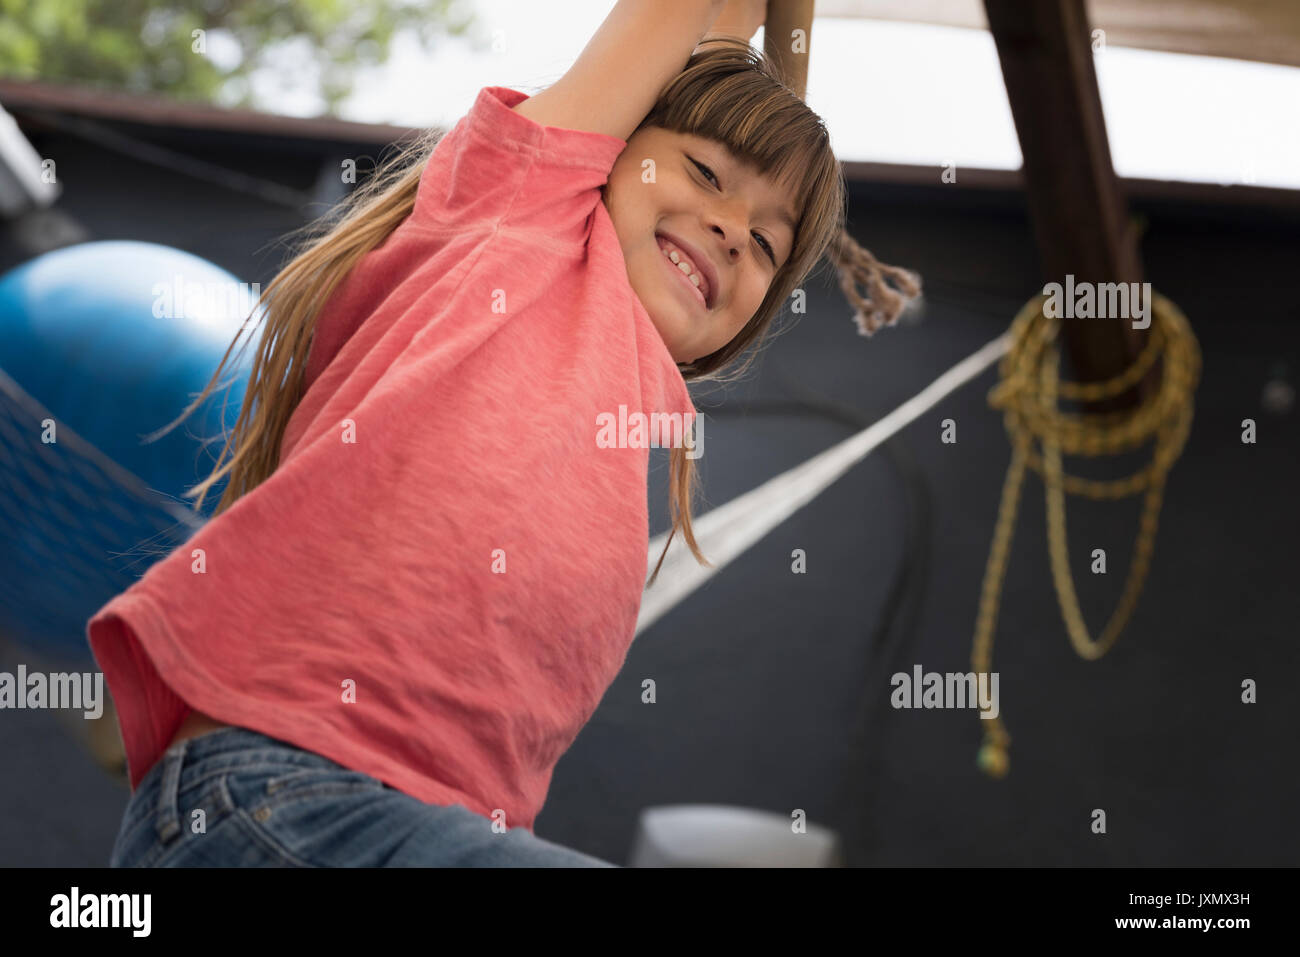 Girl hanging on Monkey bar regardant le sourire de l'appareil photo Banque D'Images